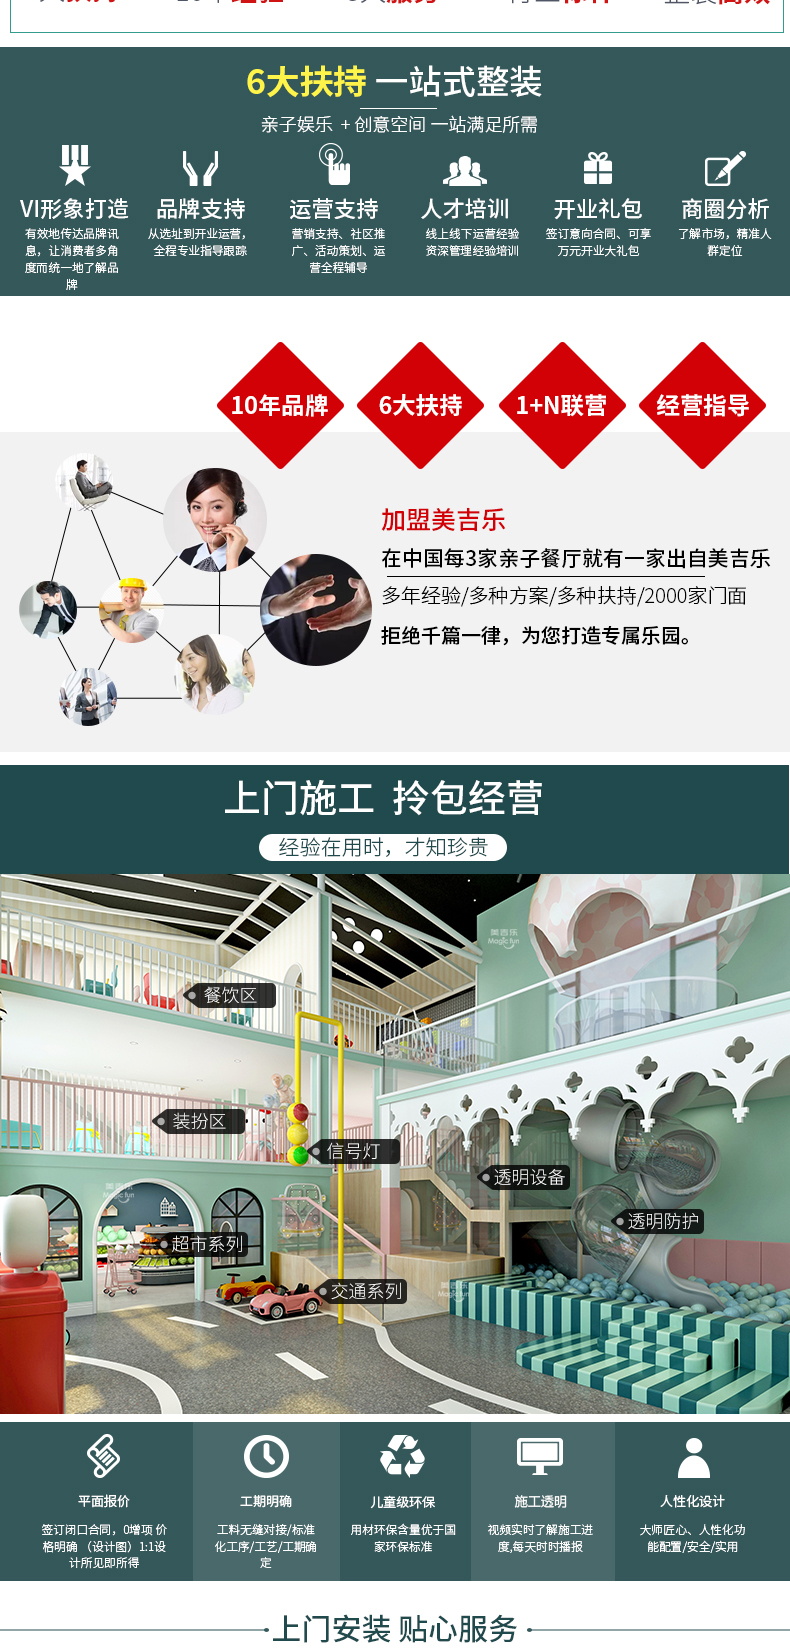 武汉游乐场室内设备 淘气堡儿童乐园 大型亲子餐厅 17